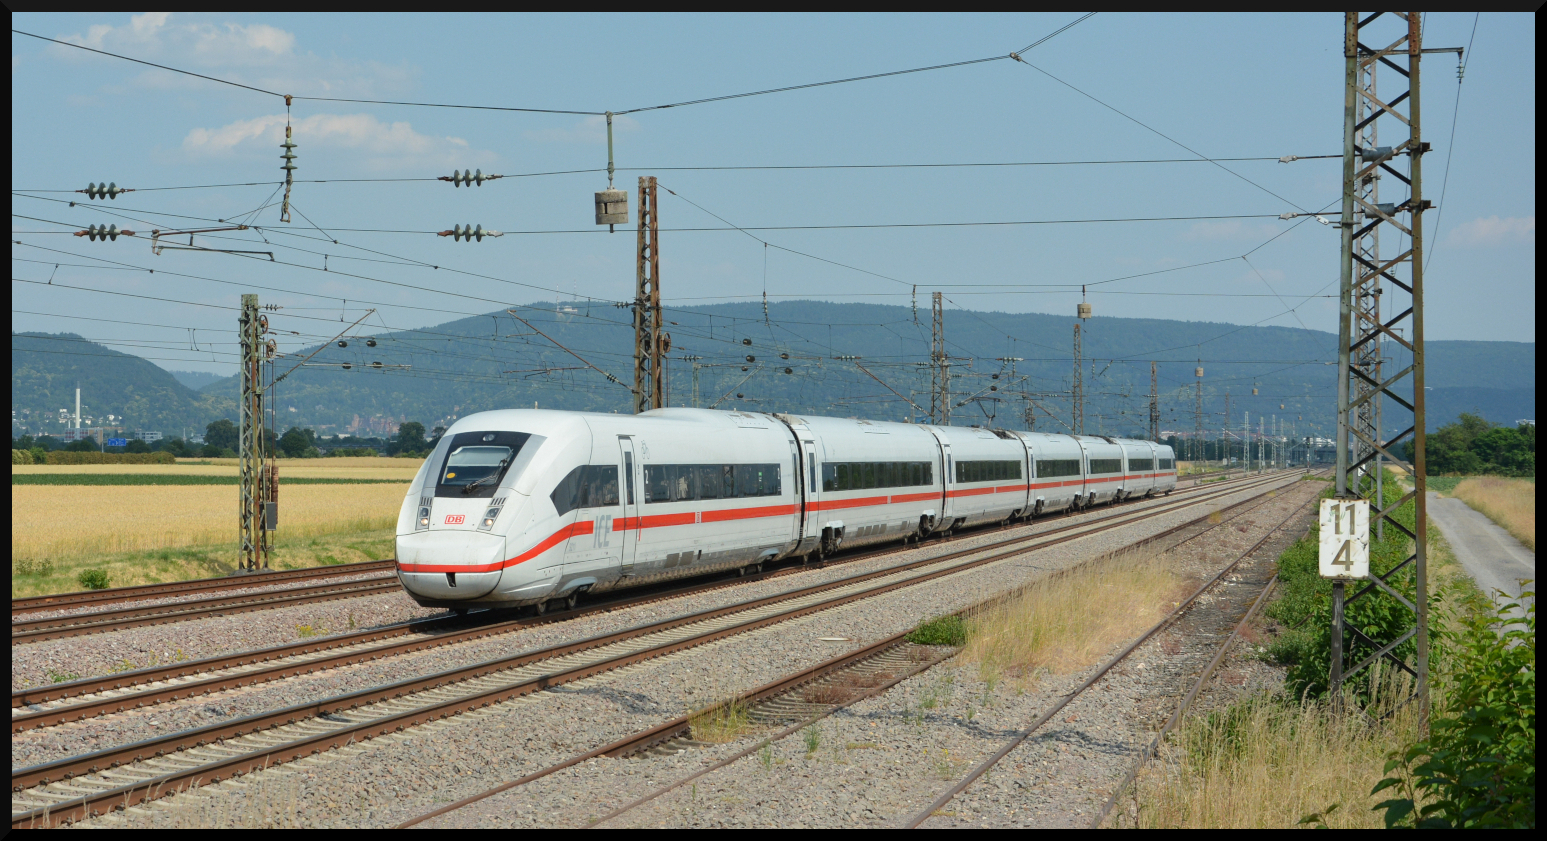 Wegen einer Stellwerkstörung in Hockenheim war die Schnellfahrstrecke Mannheim – Stuttgart am 17.06.2023 nachmittags mehrere Stunden nicht befahrbar. Sämtliche Fernzüge mussten über die Altstrecken via Heidelberg und Bruchsal umgeleitet werden, was erhebliche Verspätungen auch im Regionalverkehr mit sich brachte. Von der Streckensperrung war auch der zum kleinen Fahrplanwechsel neu als ICE eingeführte ehem. EC 118 Innsbruck – Dortmund betroffen, der seit 11.06.2023 von siebenteiligen ICE 4 gebildet wird. Die Aufnahme entstand bei MA-Friedrichsfeld.